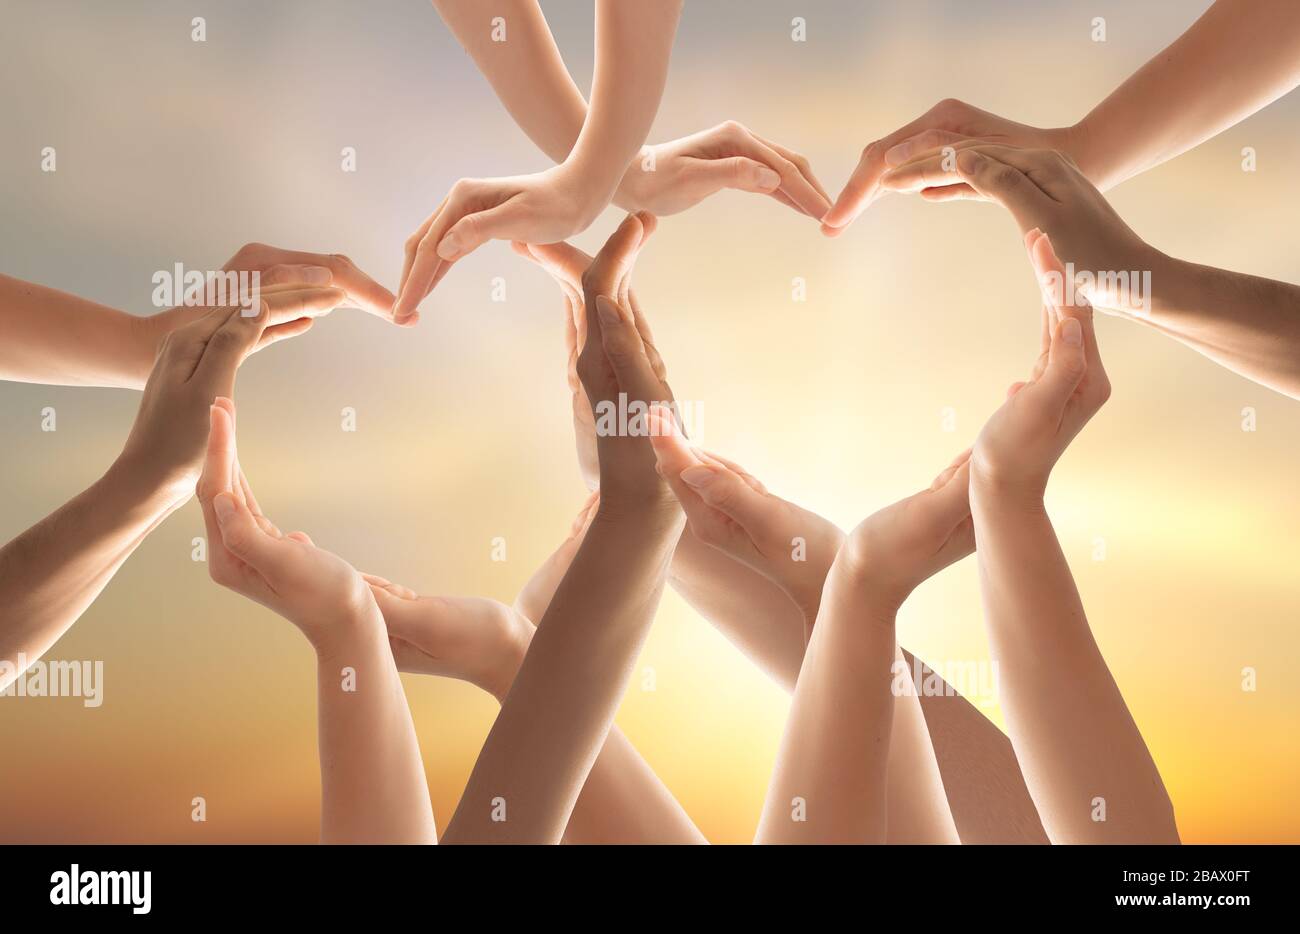 Simbolo e forma del cuore creati da Hands.The concetto di unità, cooperazione, partenariato, lavoro di squadra e carità. Foto Stock